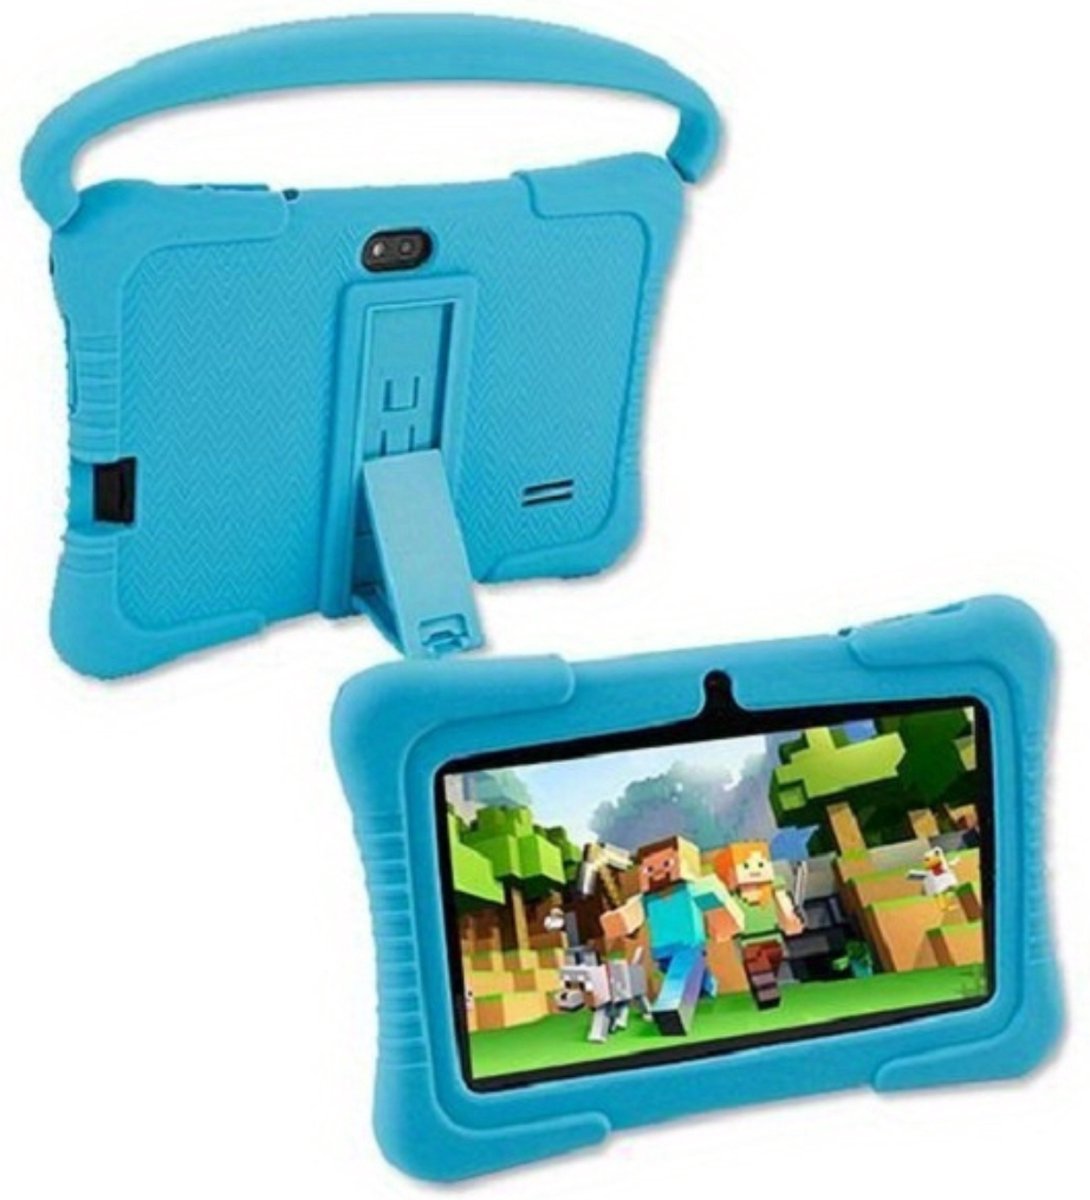 Livano Kindertablet - Kinder Computer - Vanaf 3 Jaar - 5 Jaar - 32GB - 7 Inch - Inclusief Gratis Beschermhoes - Blauw